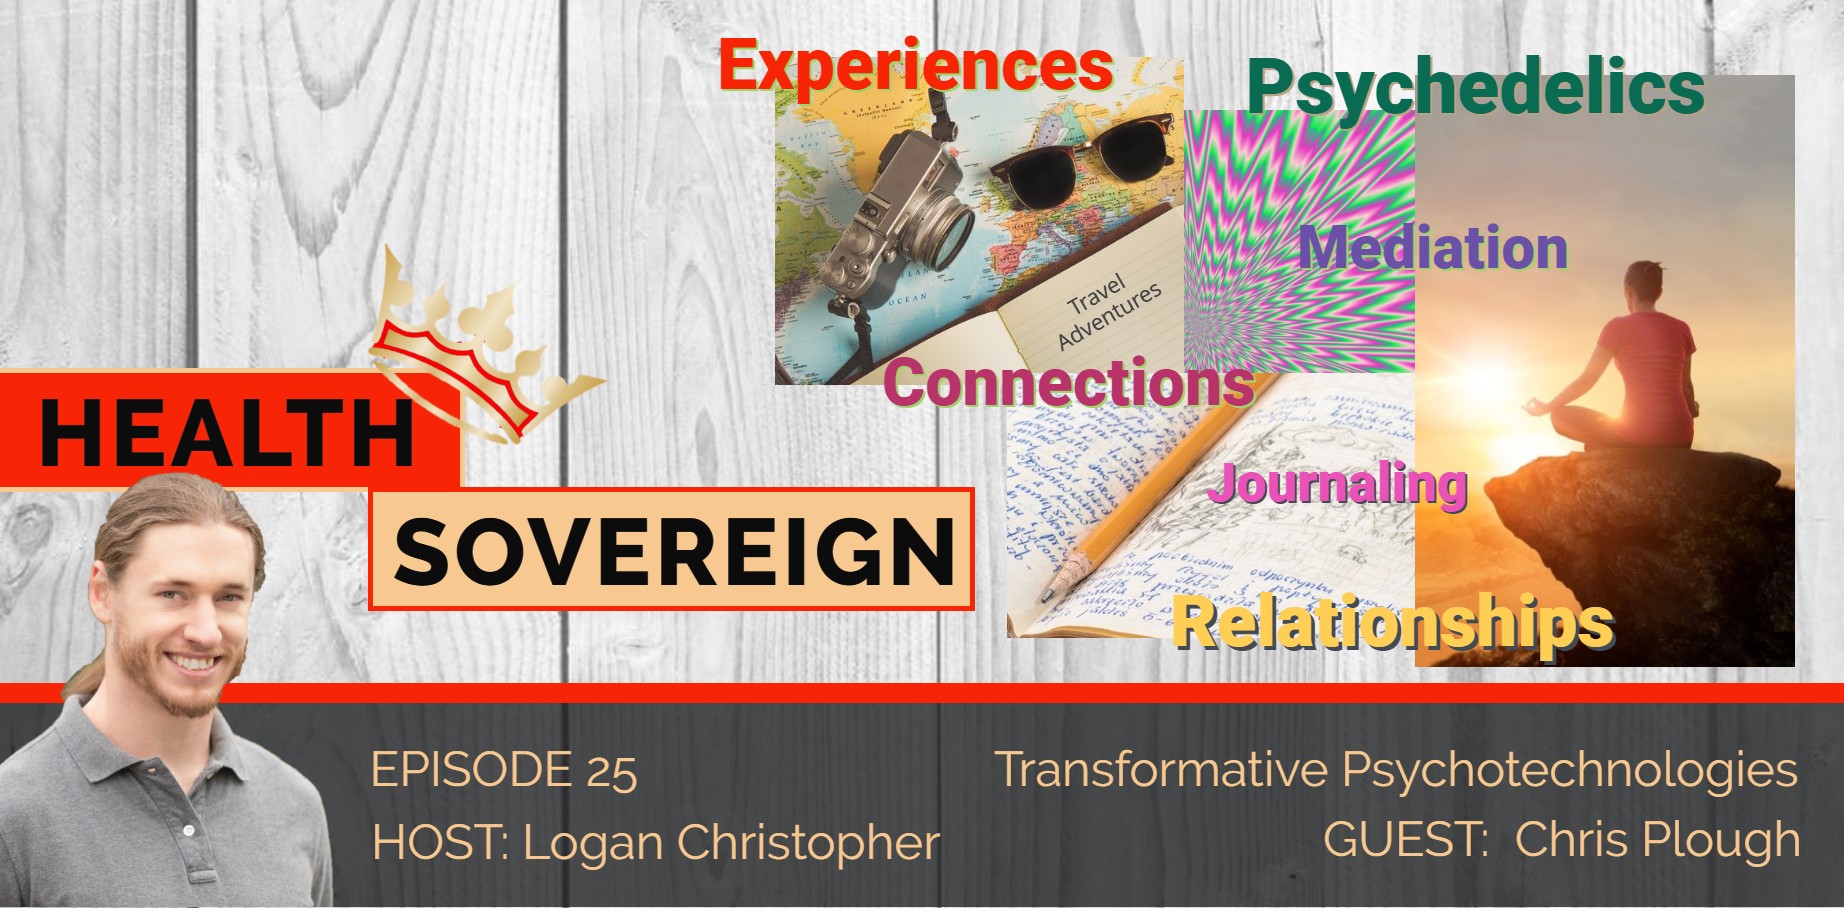 Episode 25: Transformative Psychotehnologies